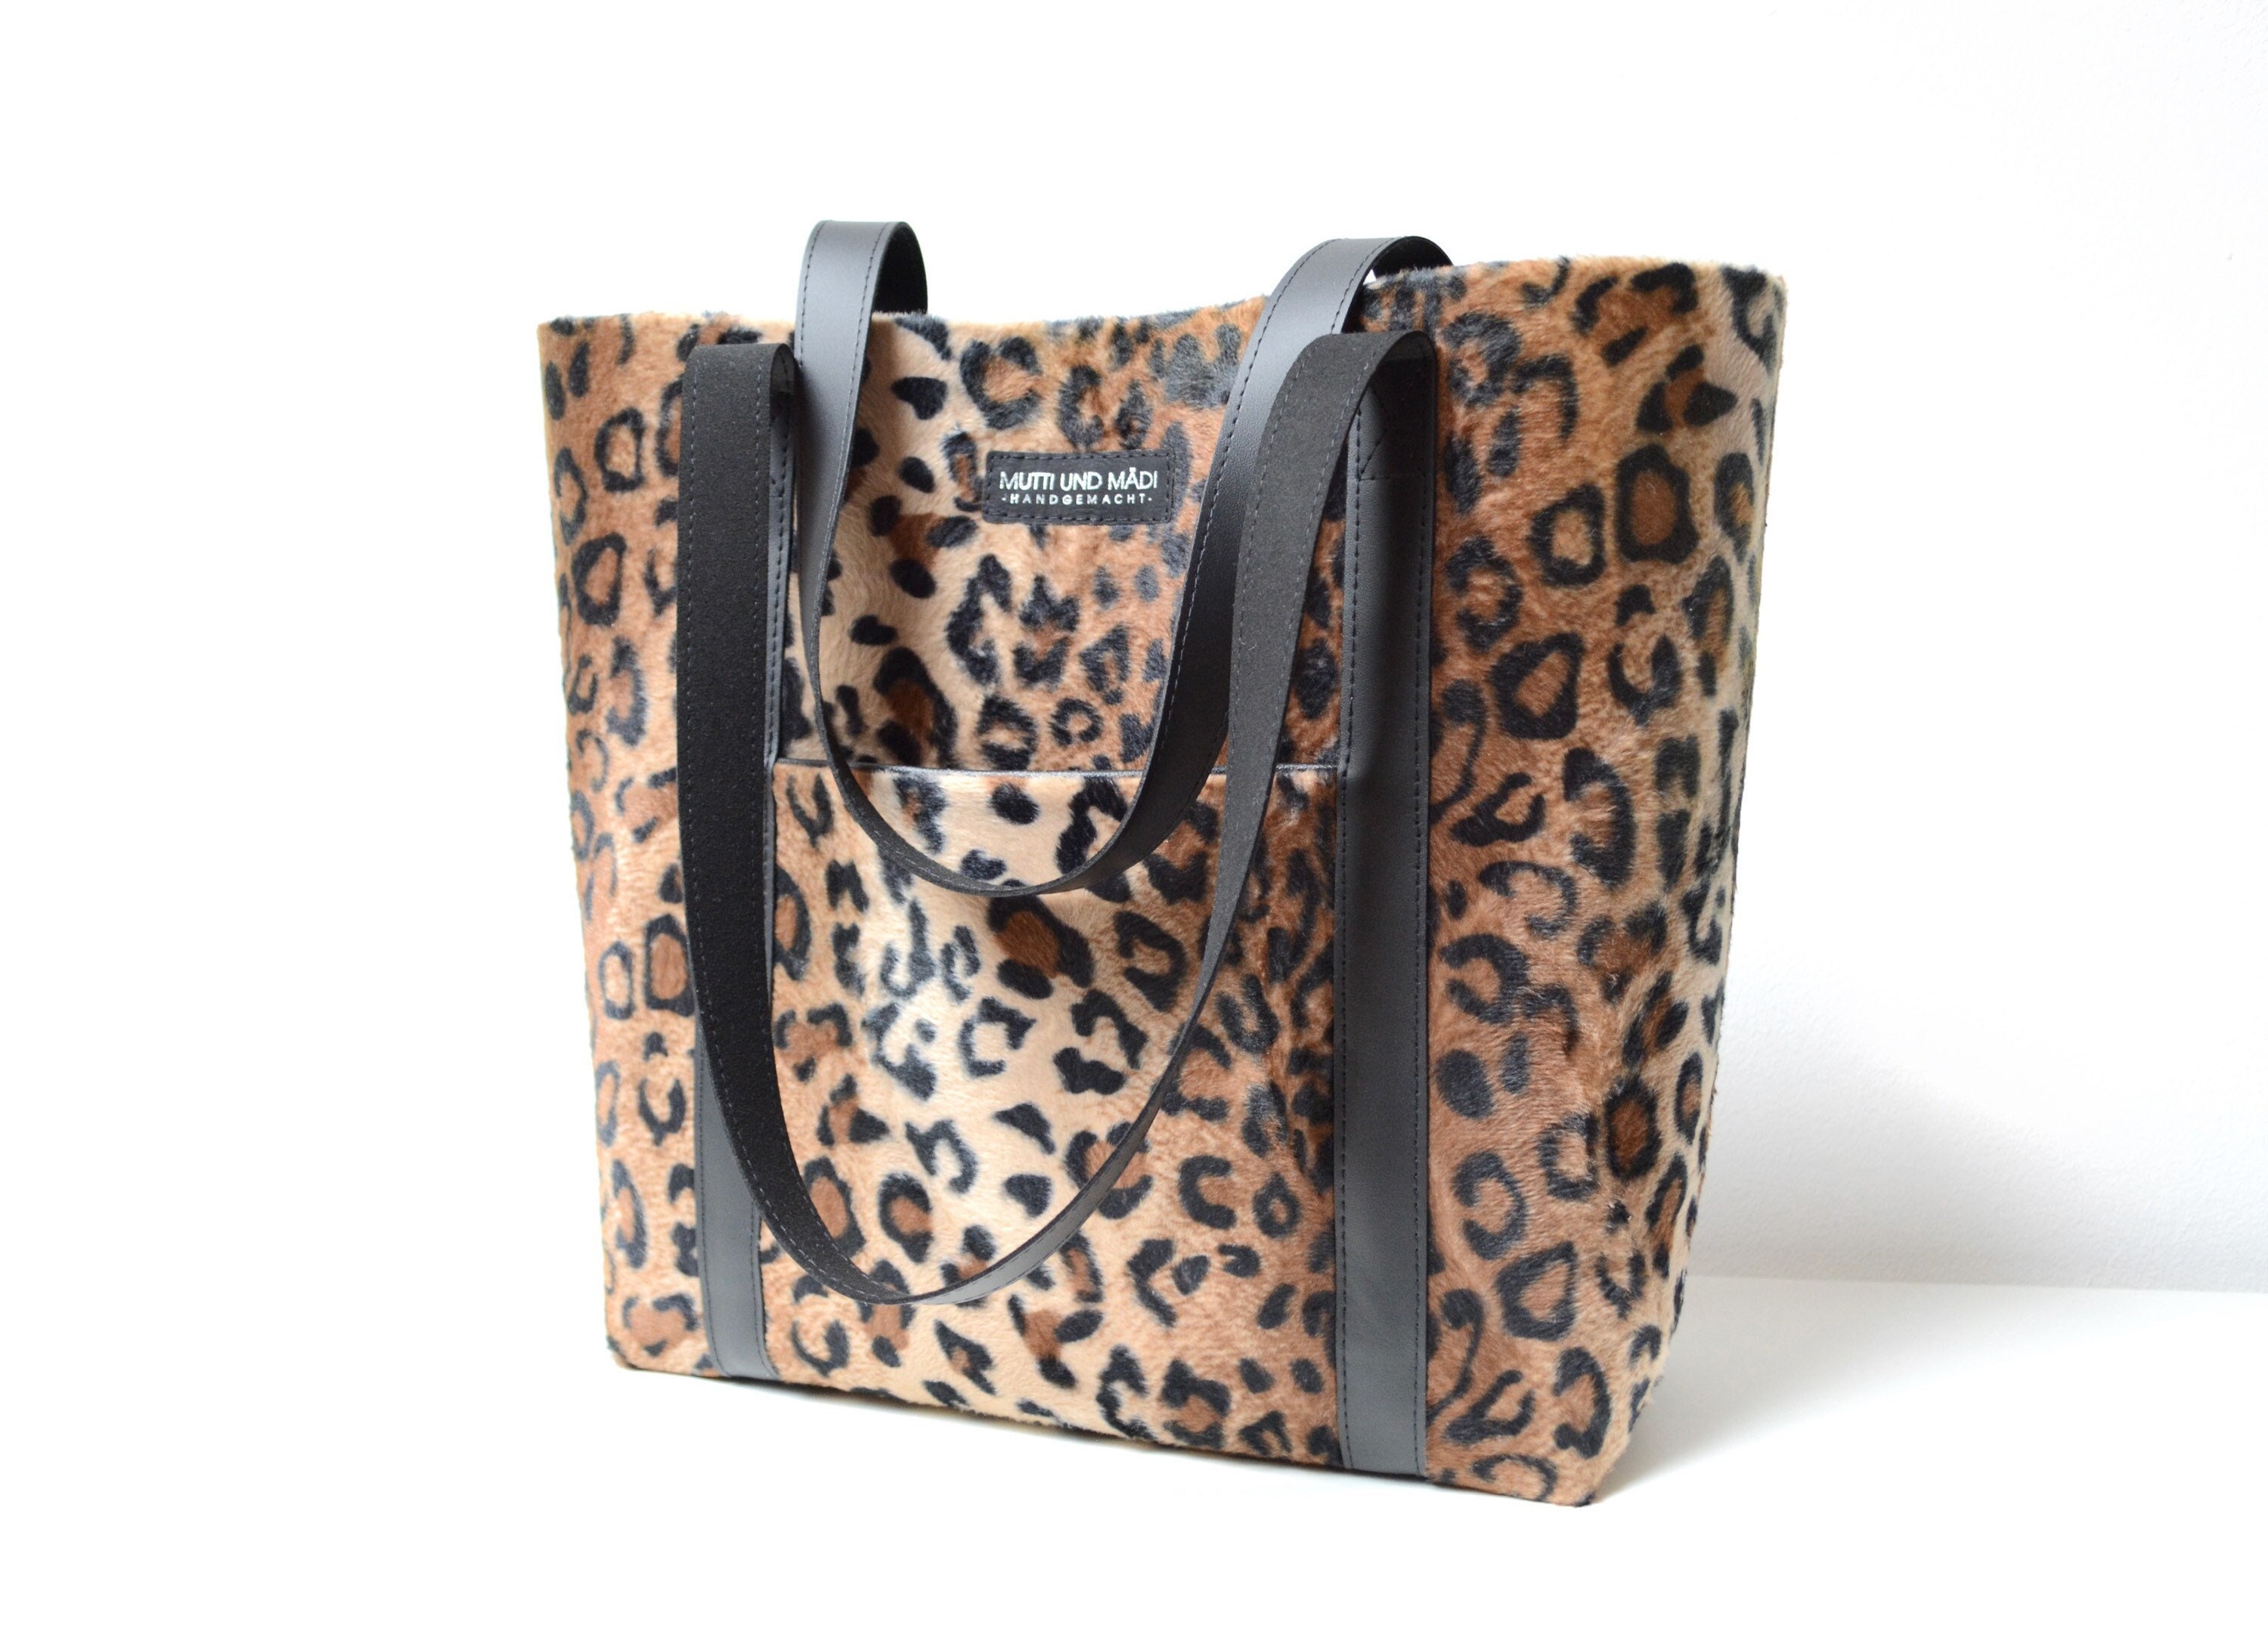 Leopard print handtasche - Etsy.de